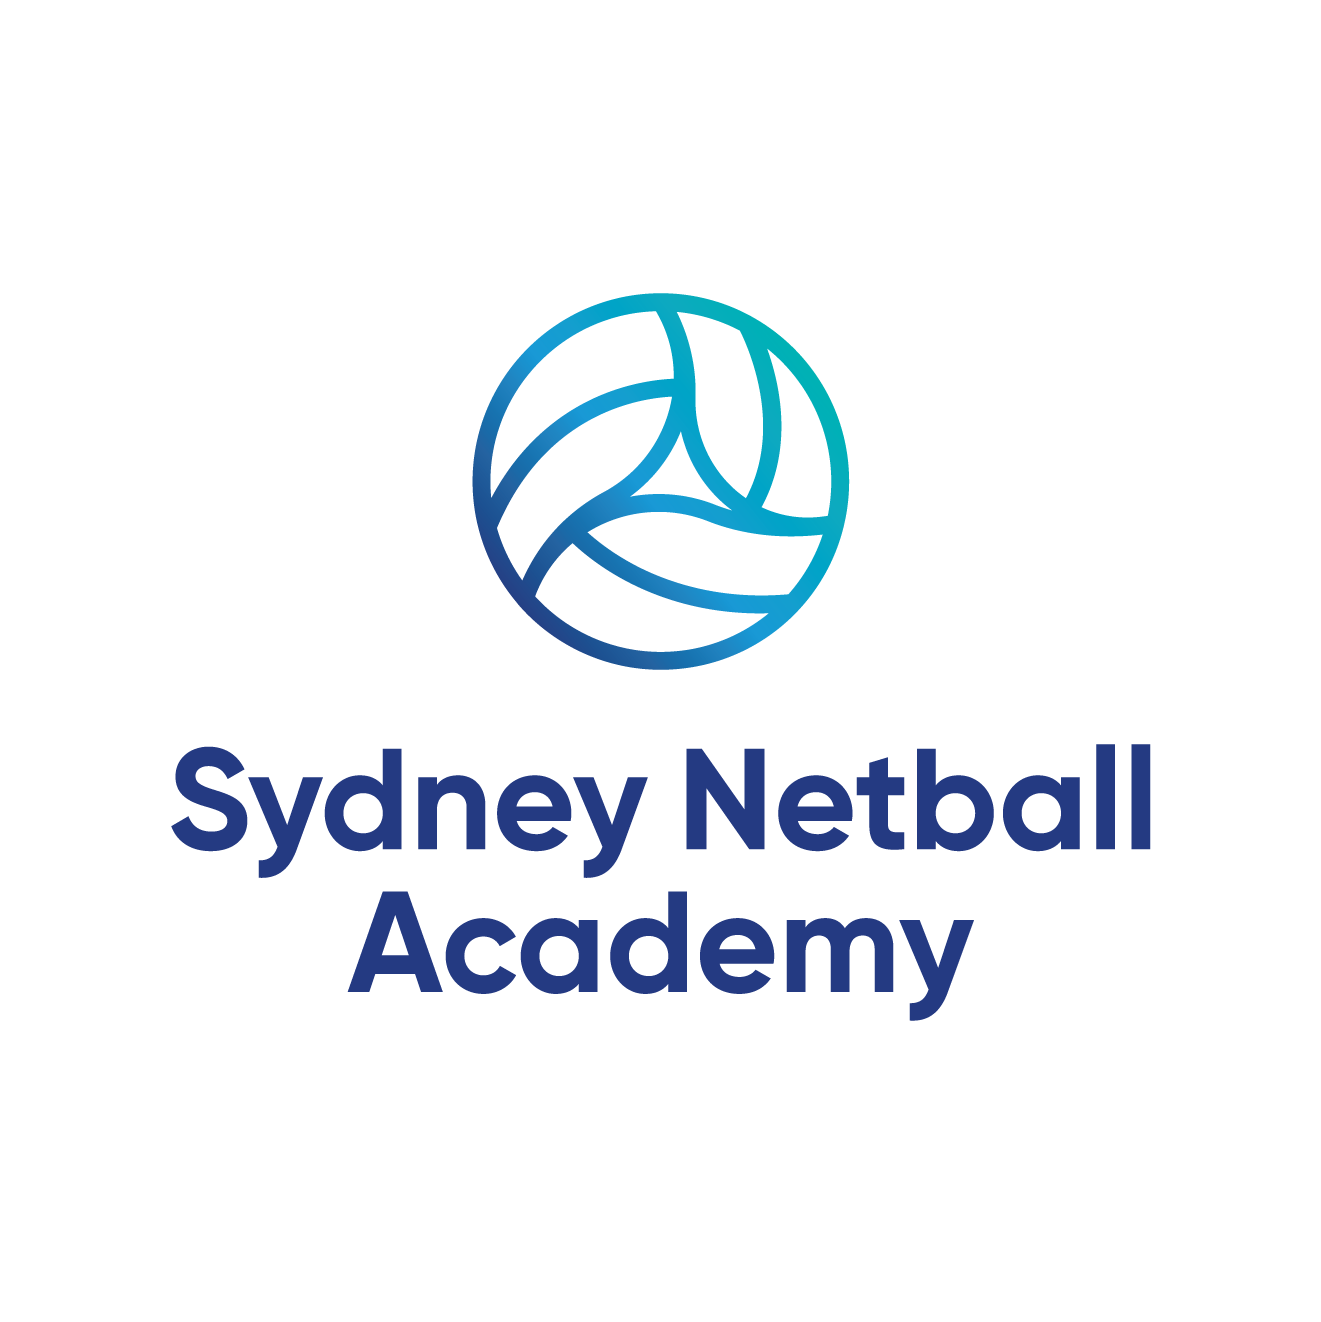 Sydney Netball Academy